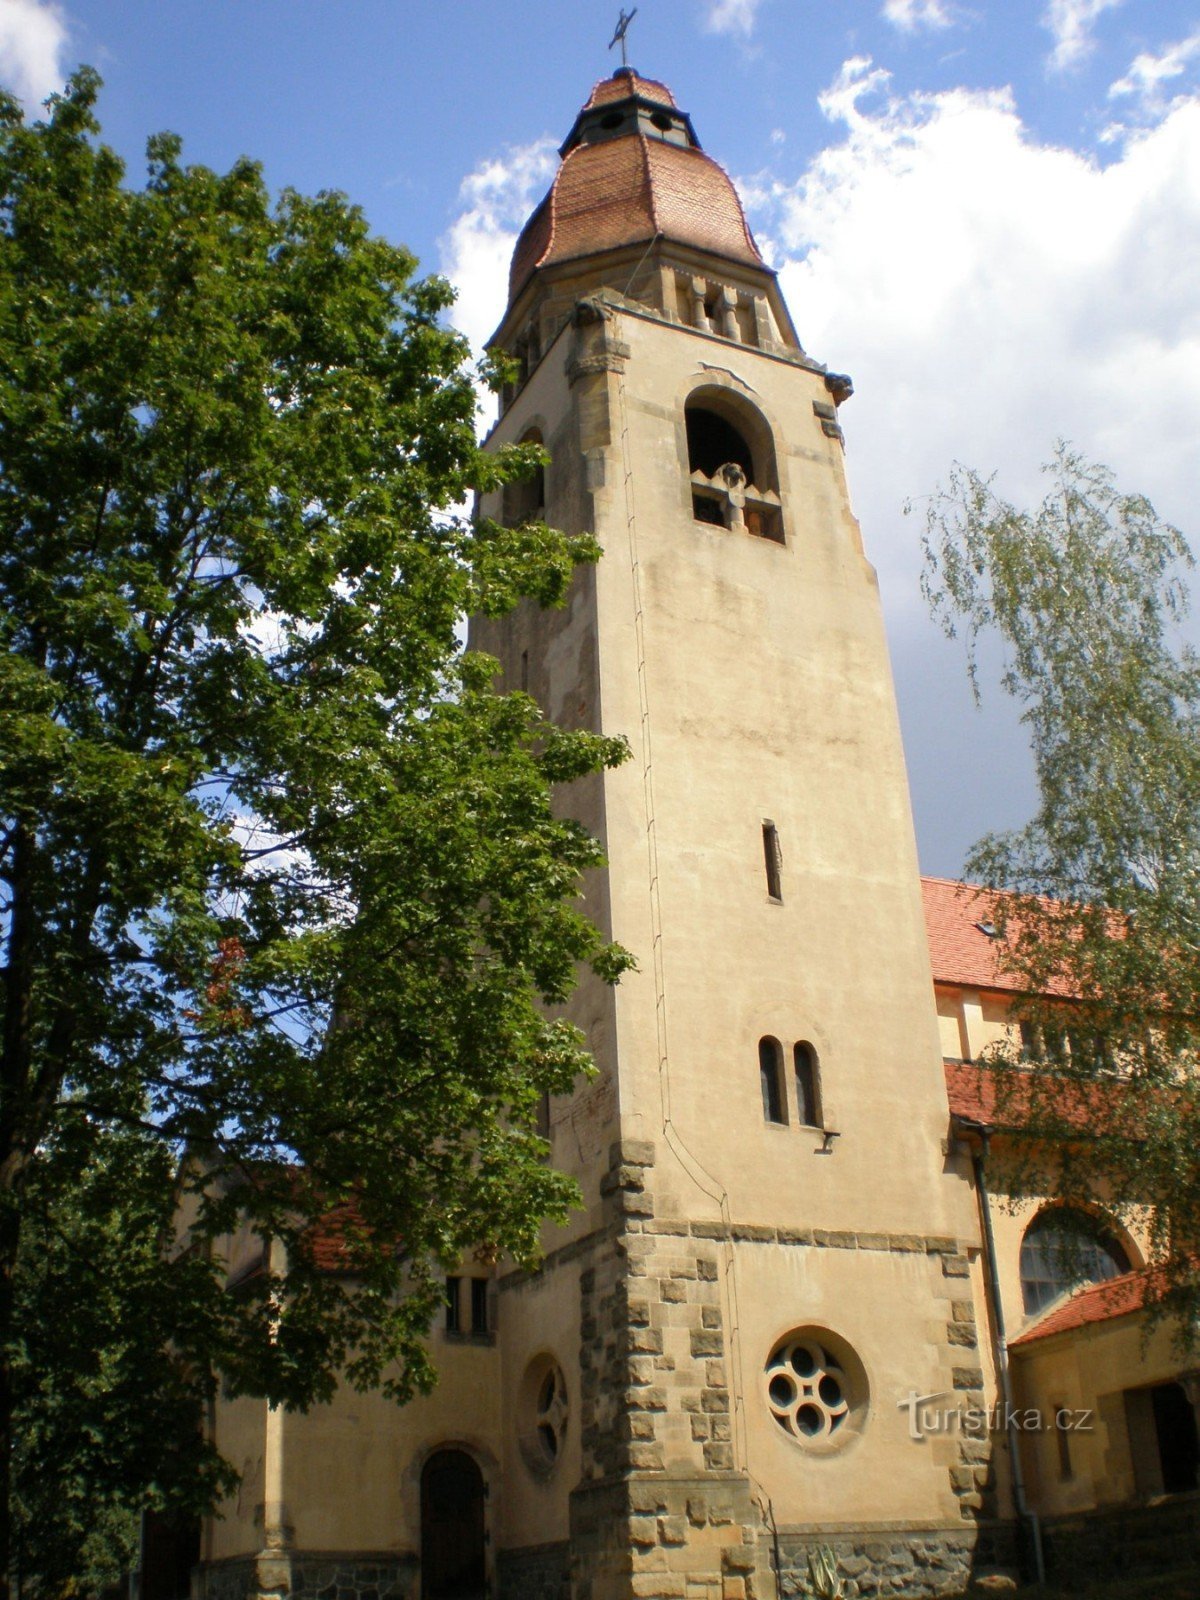 Štěchovice - crkva sv. Jan Nepomucký